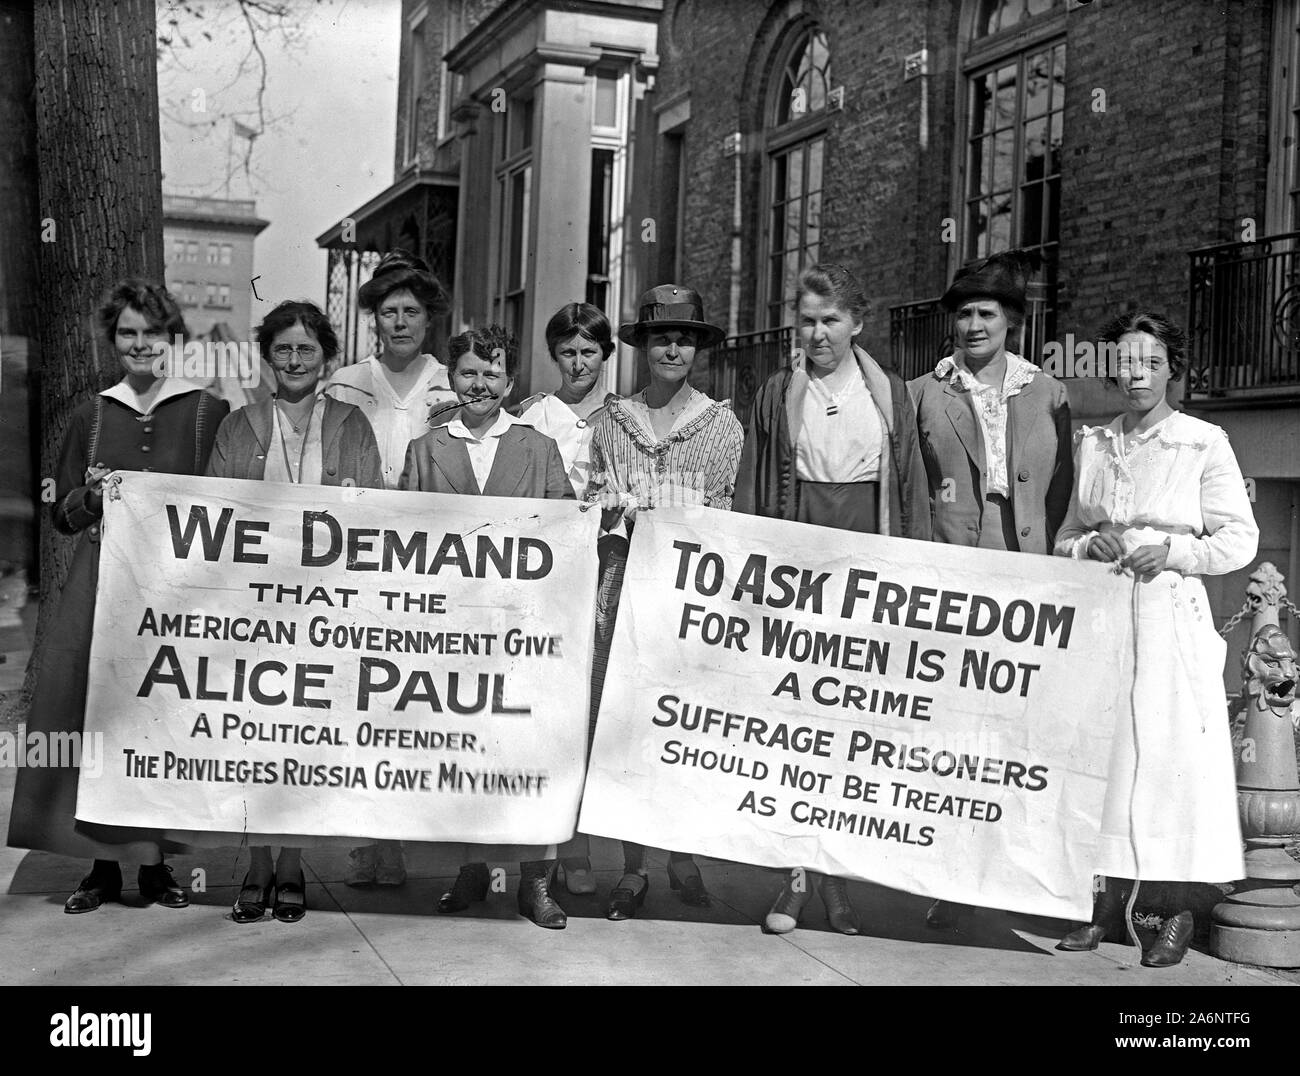 Woman Suffrage Suffrage Femme - bannières - liberté pour Alice Paul ca. 1917 Photo Stock - Alamy